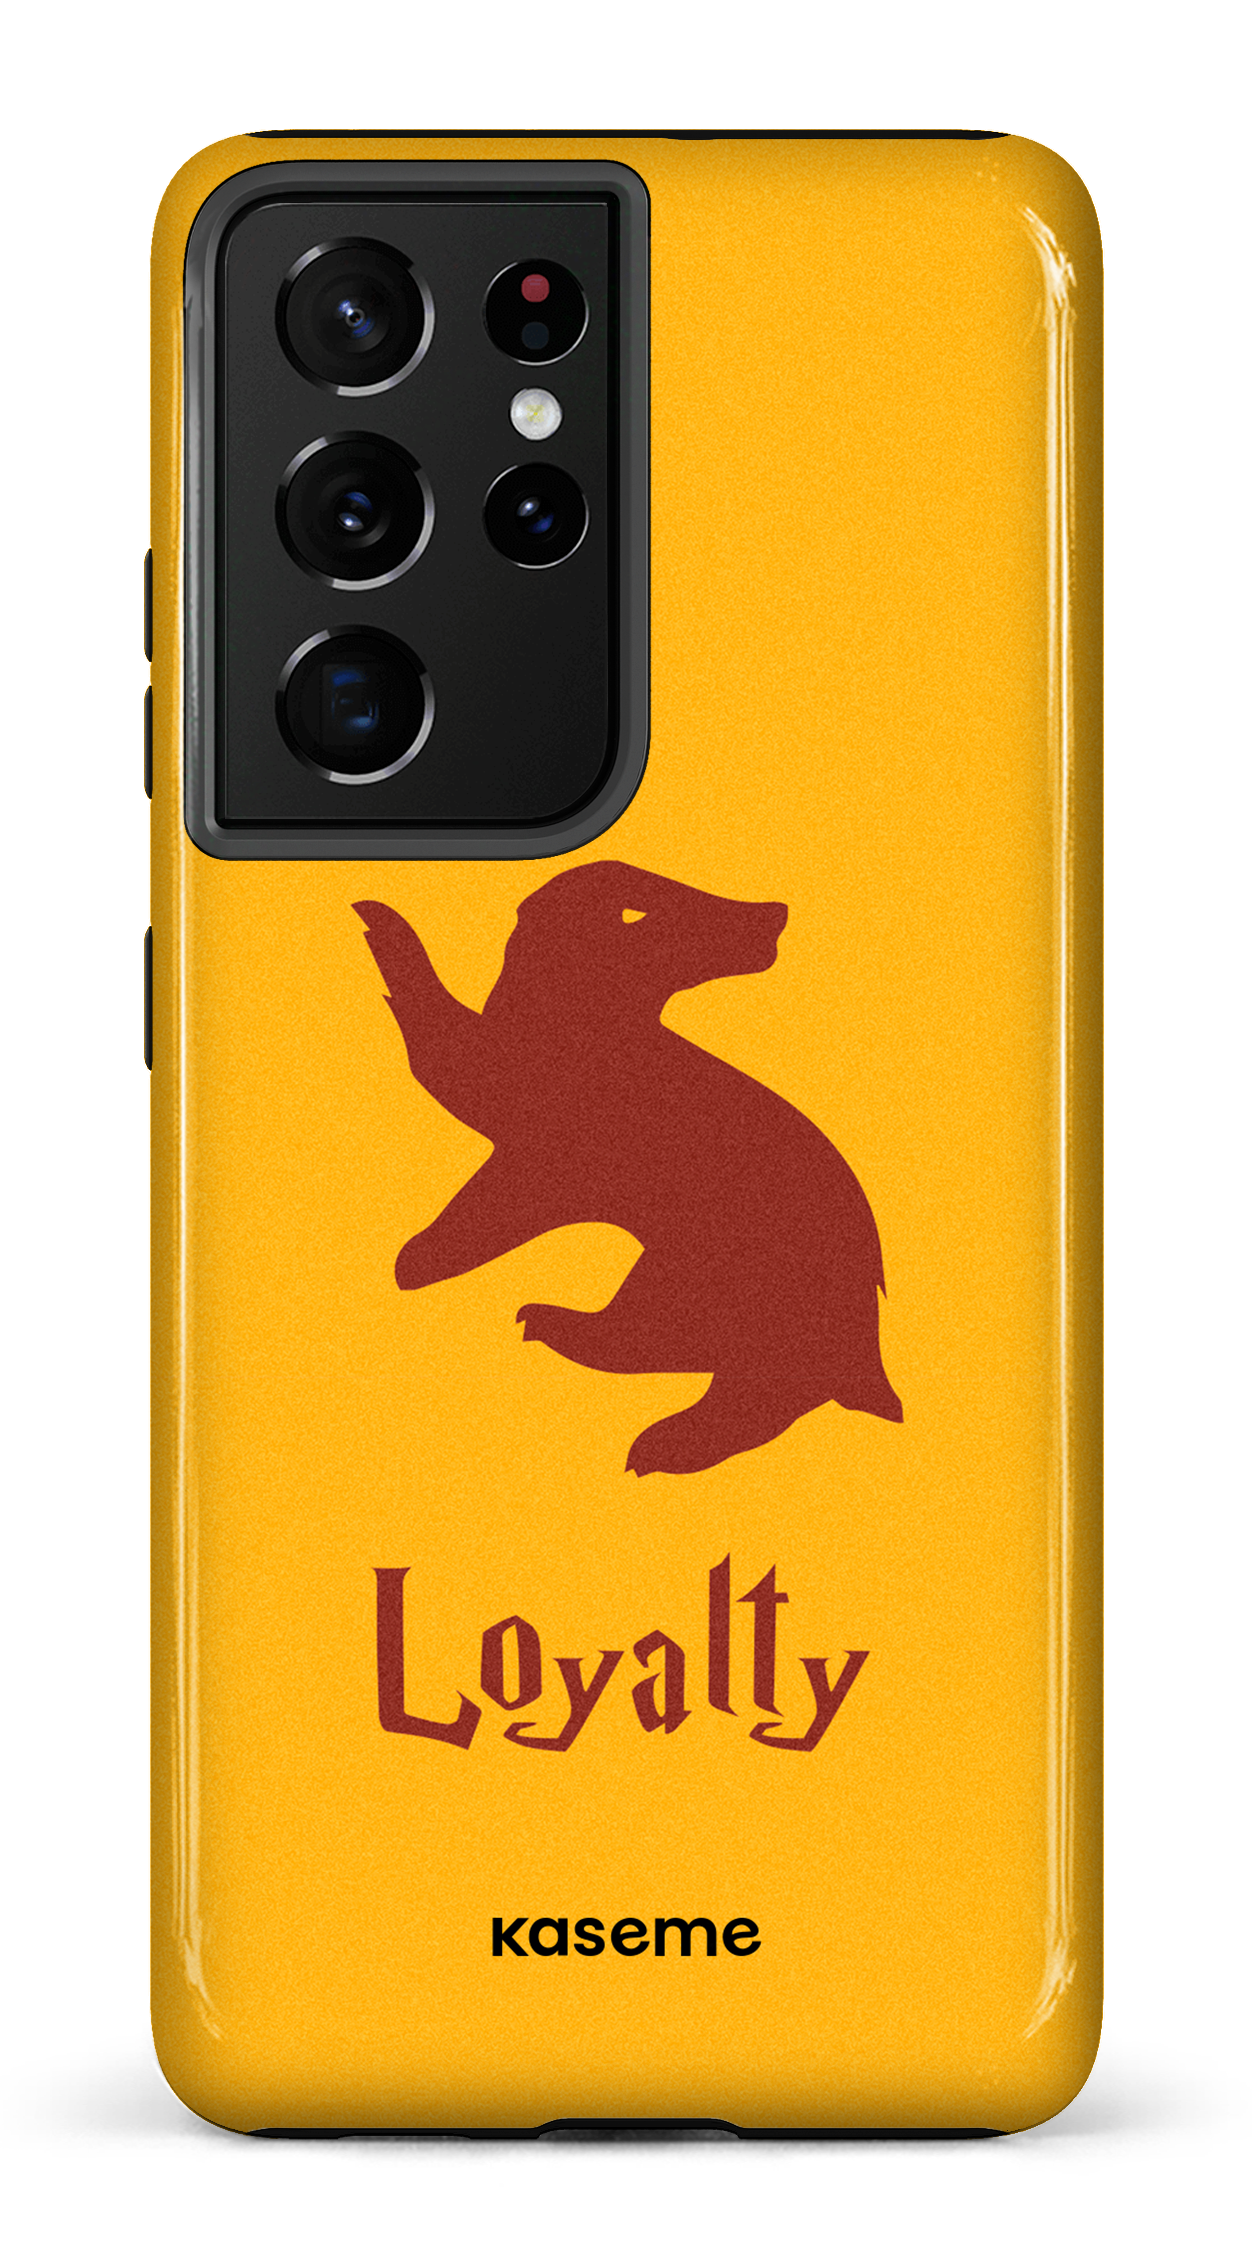 Loyalty - Galaxy S21 Ultra